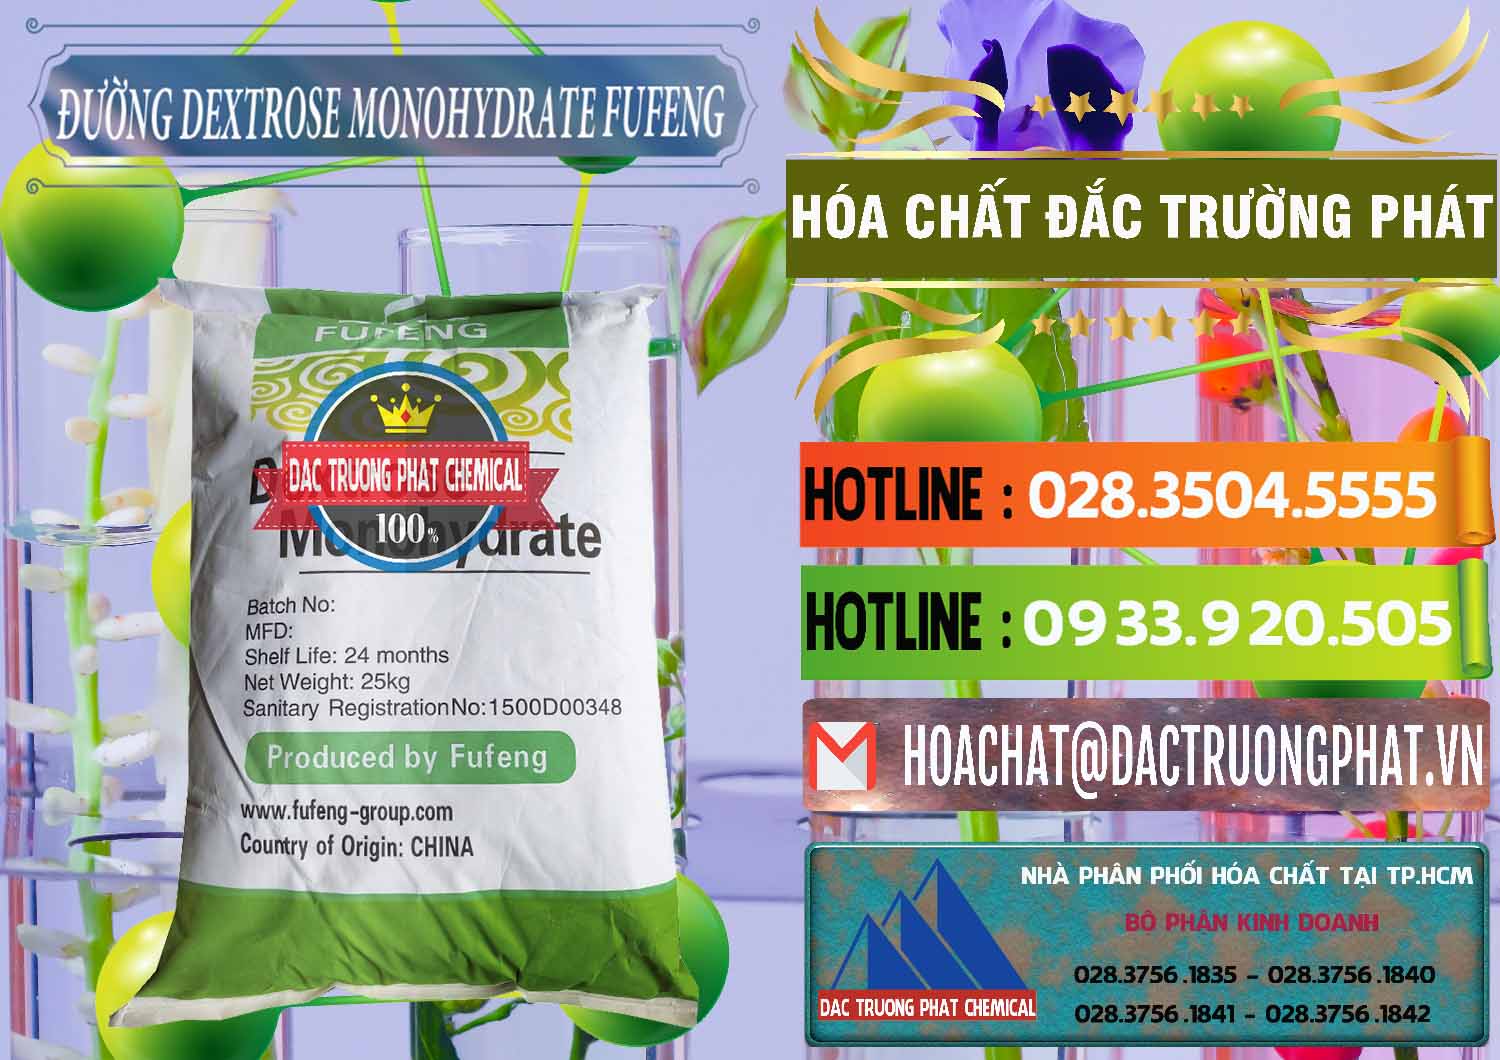 Đơn vị chuyên bán _ cung cấp Đường Dextrose Monohydrate Food Grade Fufeng Trung Quốc China - 0223 - Công ty cung cấp _ bán hóa chất tại TP.HCM - cungcaphoachat.com.vn